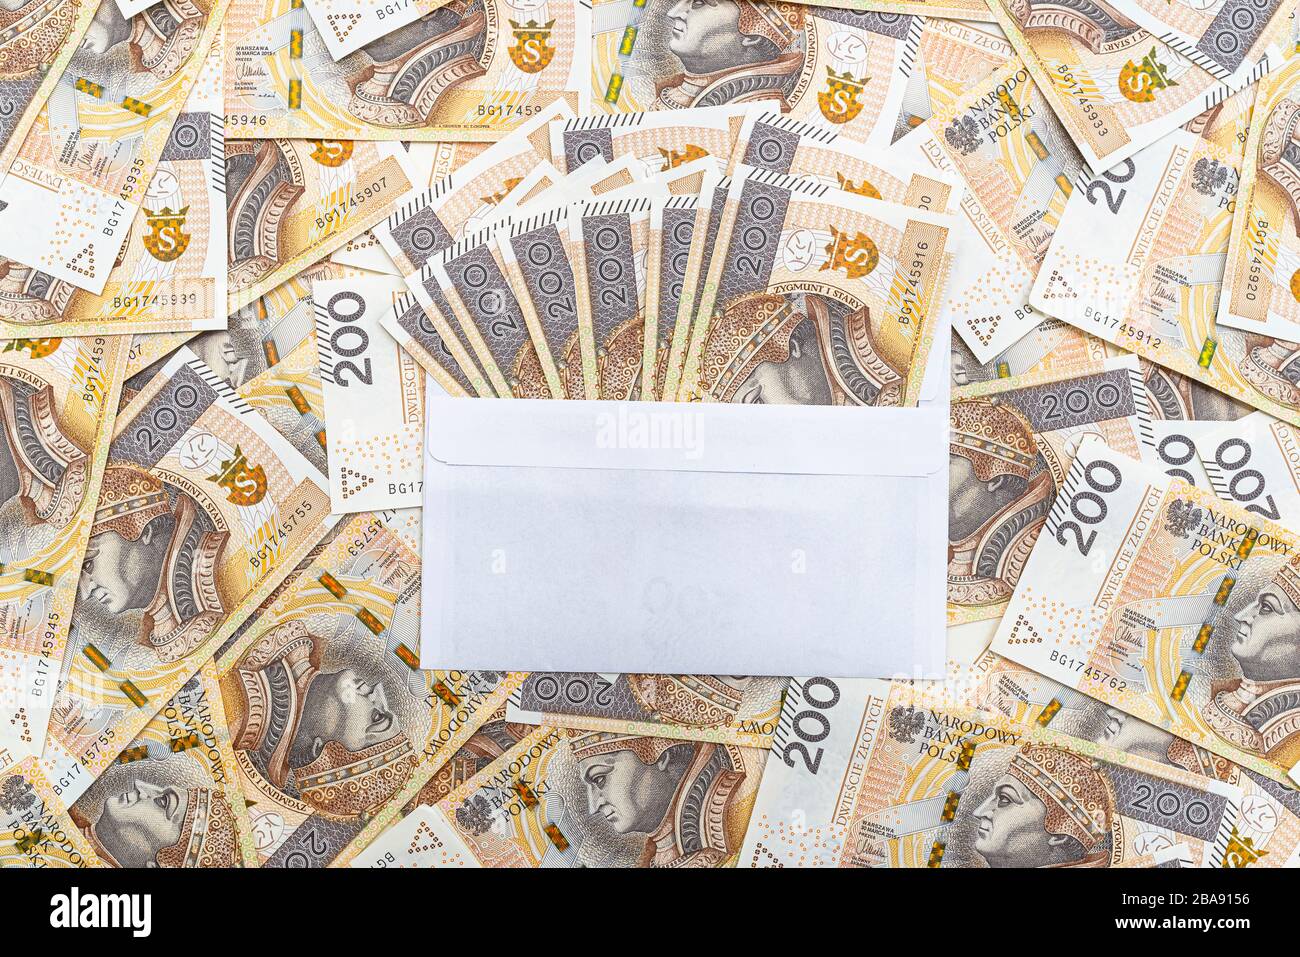 Arrière-plan fait du recto d'un billet polonais de 200 PLN inséré dans une enveloppe blanche, concept de corruption et de corruption. Banque D'Images